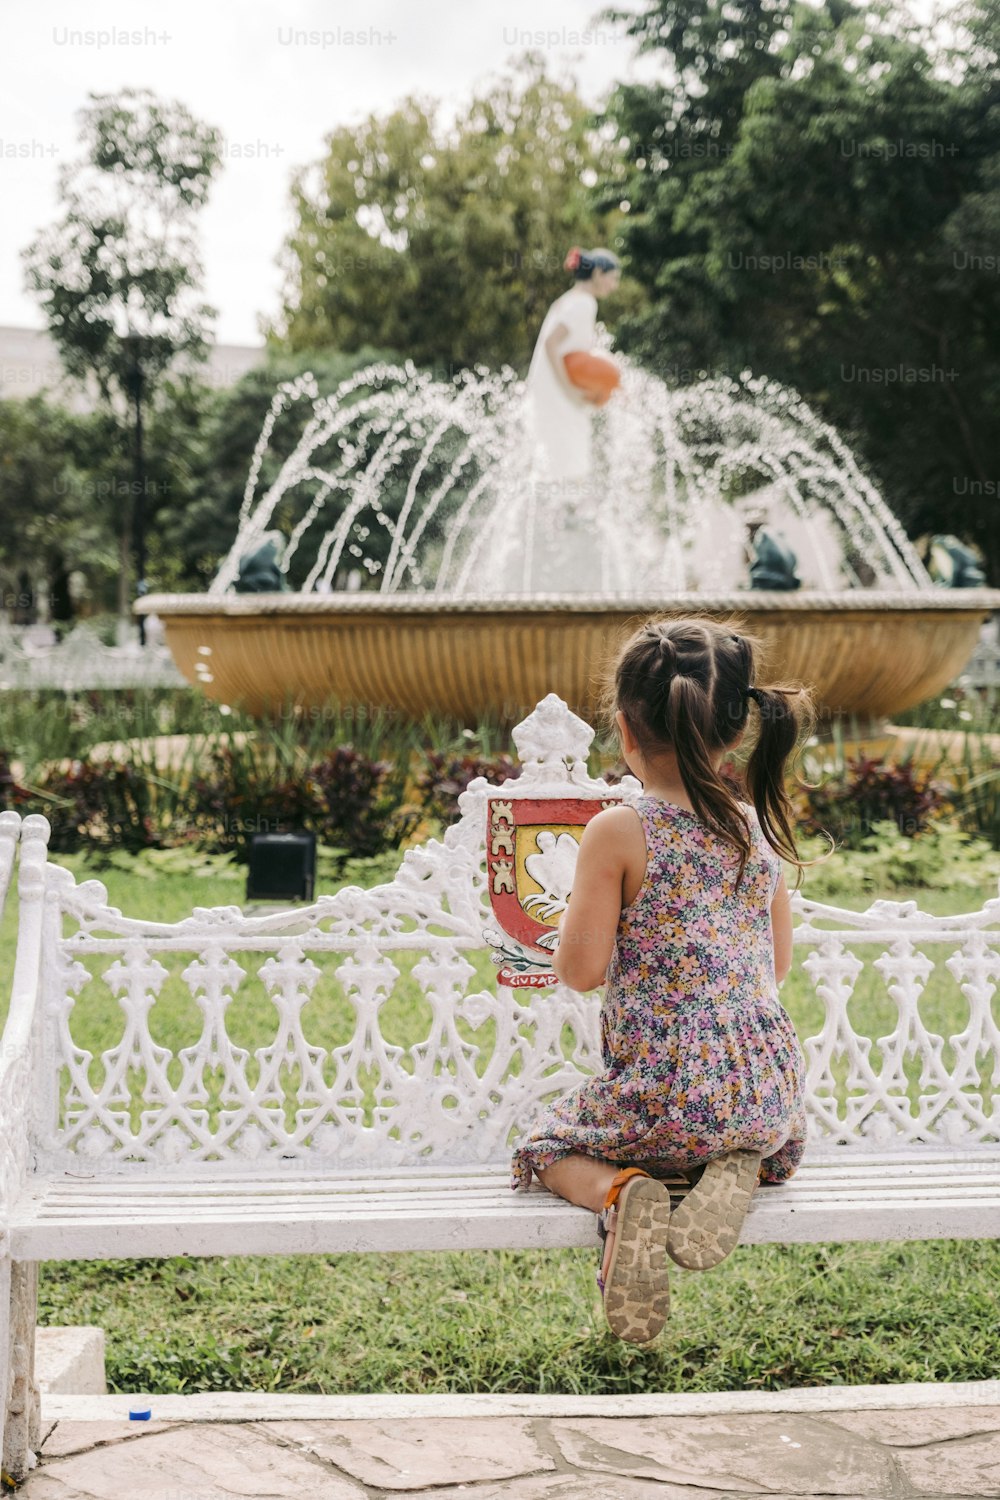 Ein kleines Mädchen sitzt auf einer Bank vor einem Brunnen